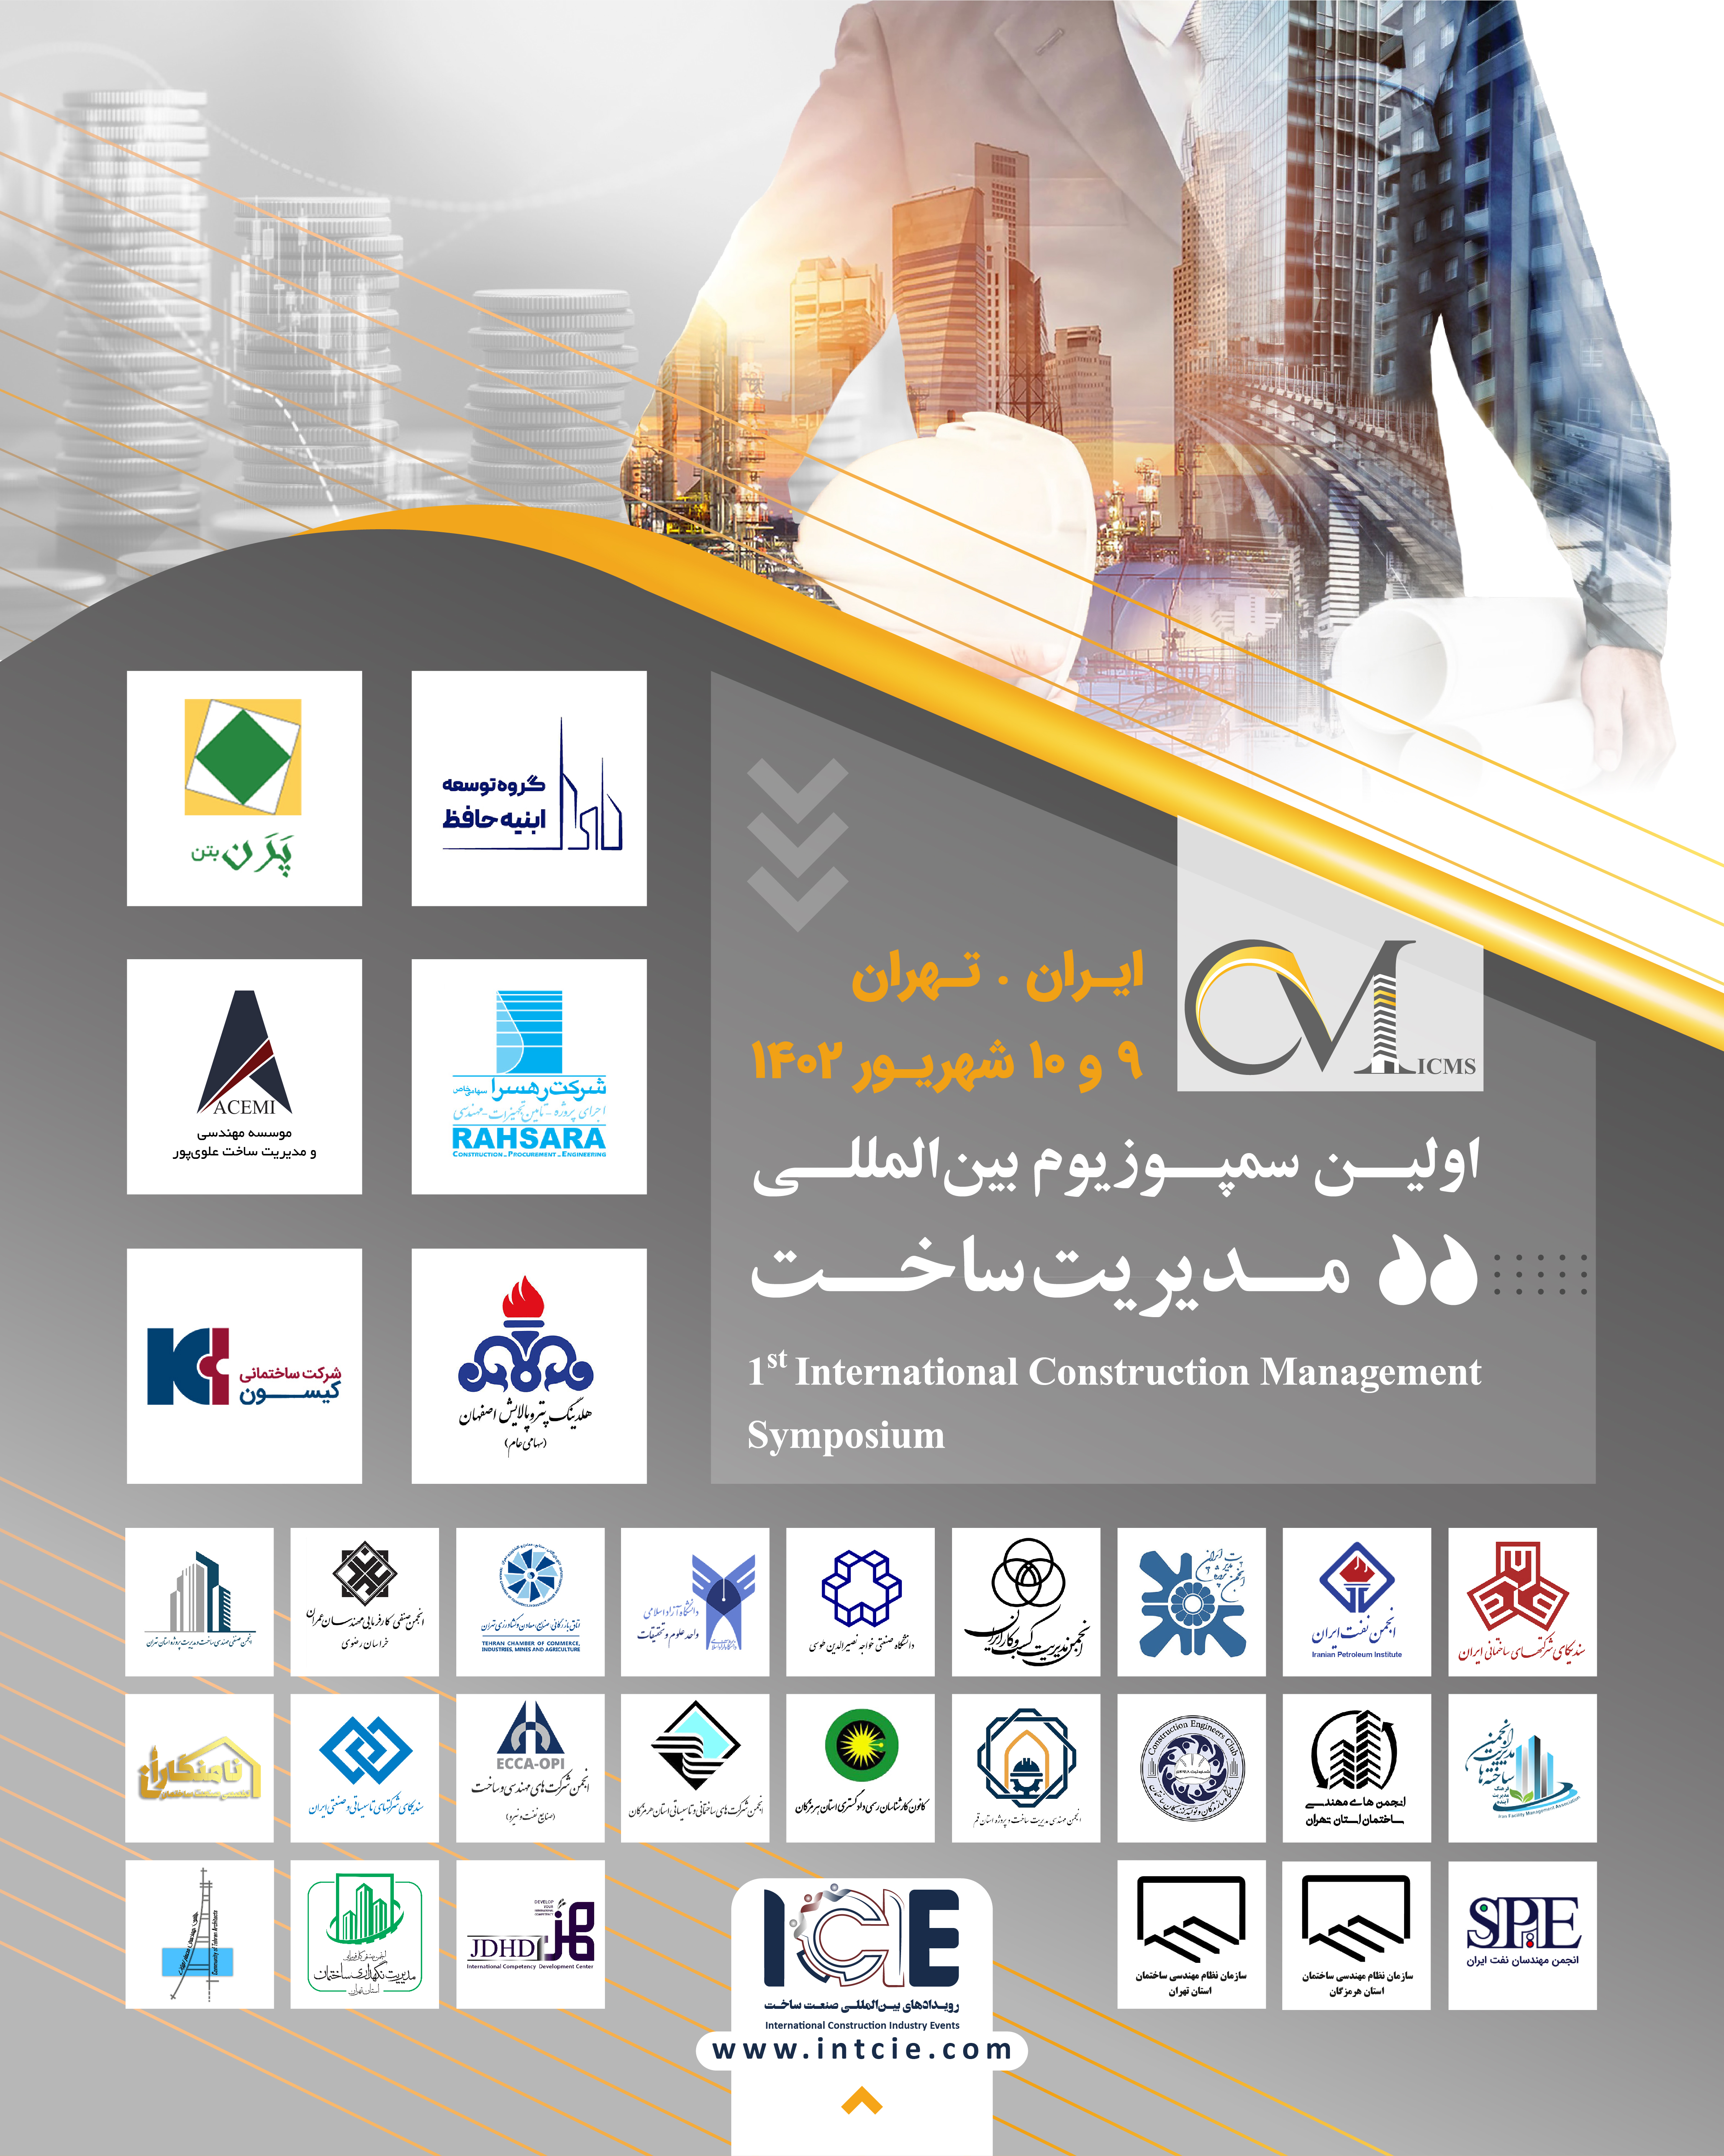 اولین سمپوزیوم بین المللی مدیریت ساخت در ایران (ICMS)